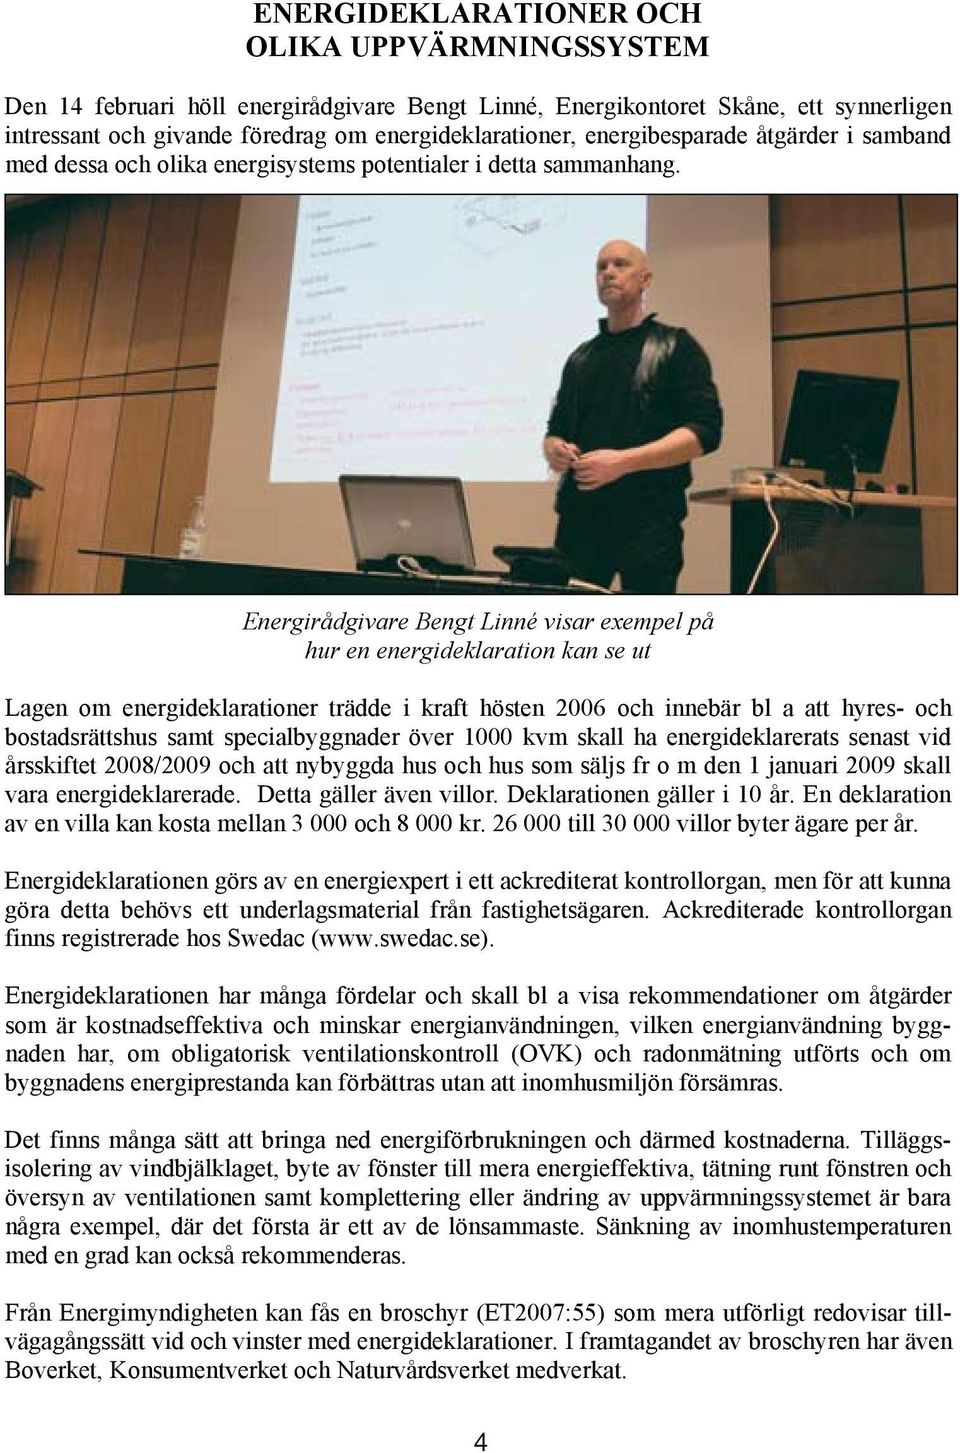 Den 14 februari höll energirådgivare Bengt Linné, Energikontoret Skåne, ett synnerligen intressant och givande föredrag om energideklarationer, energibesparade åtgärder i samband med dessa och olika